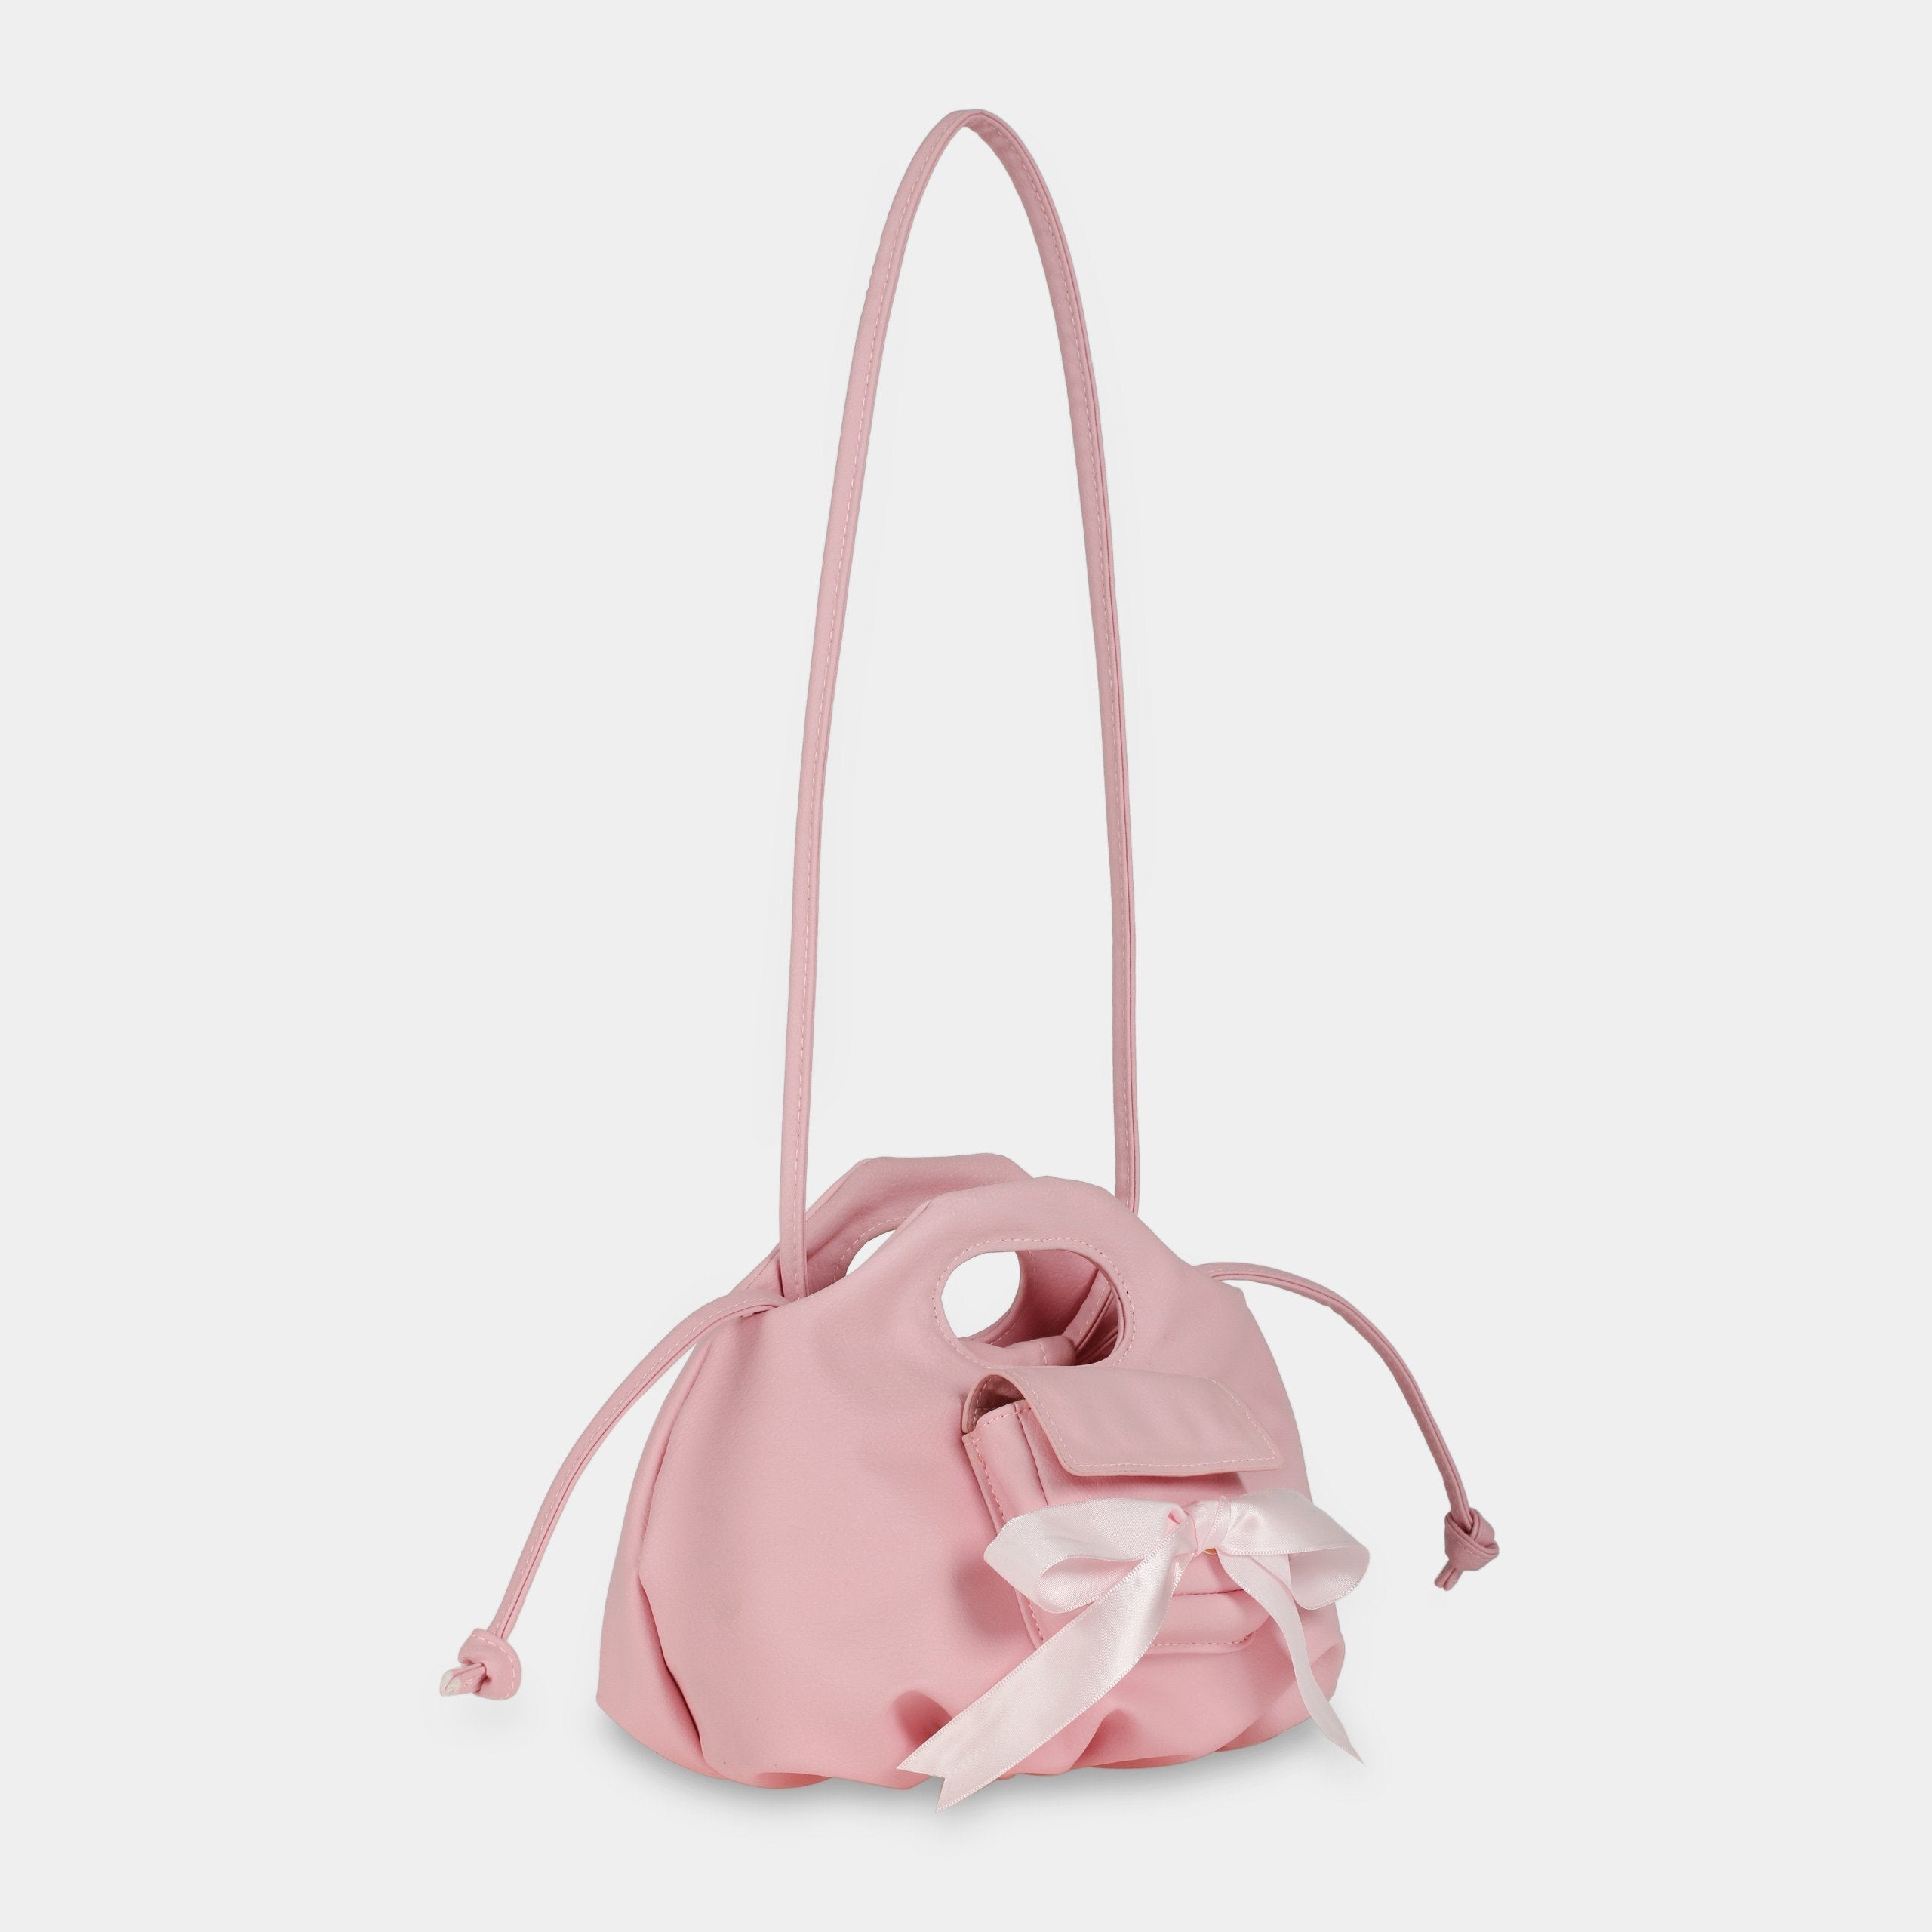 Flower Mini Pocket & Bow handbag in pink